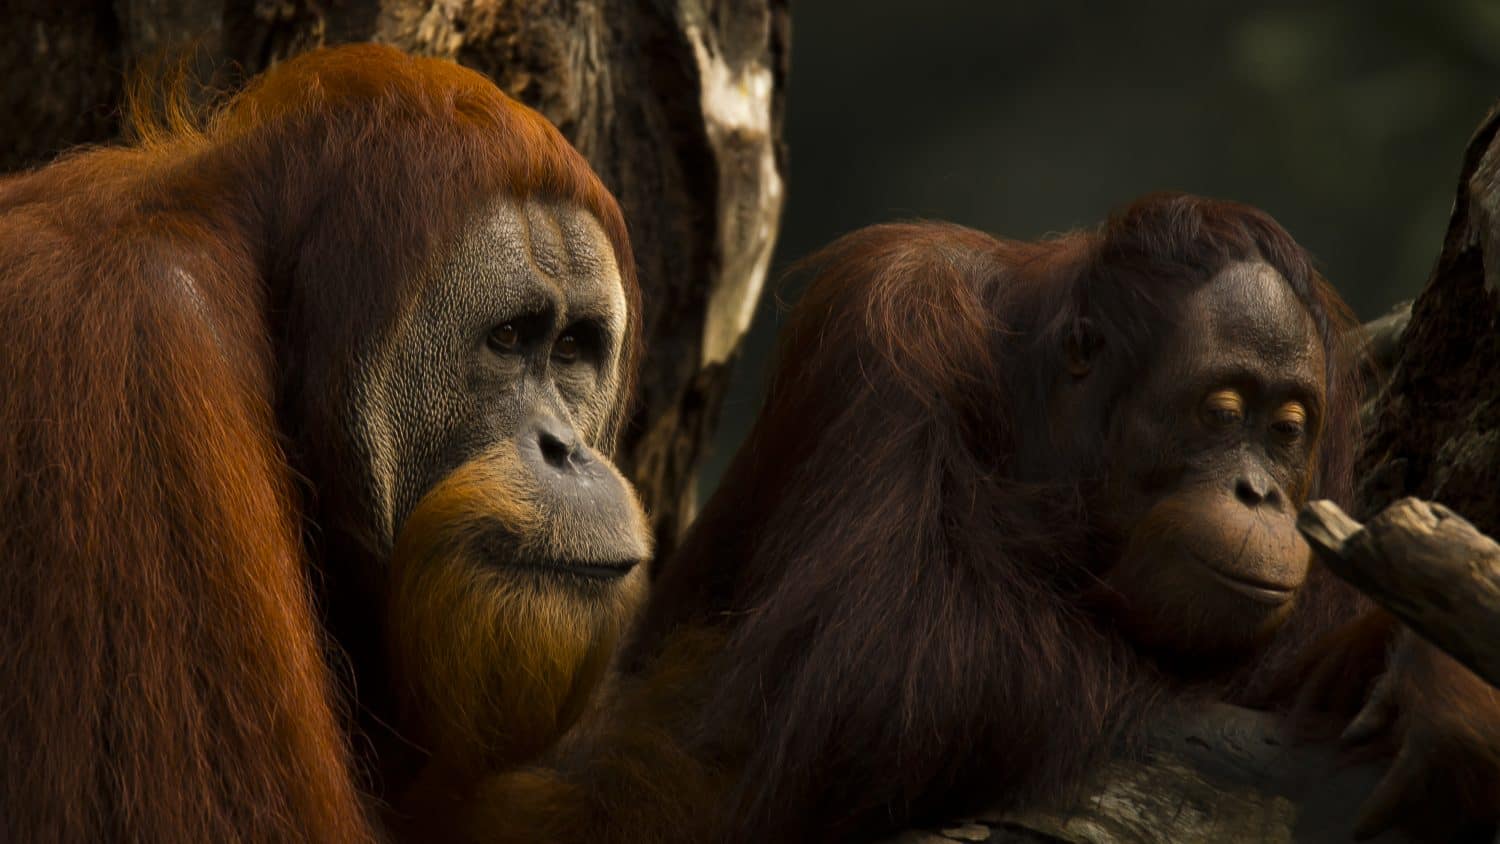 Photograph of an Orangutan couple at the Singapore Zoo